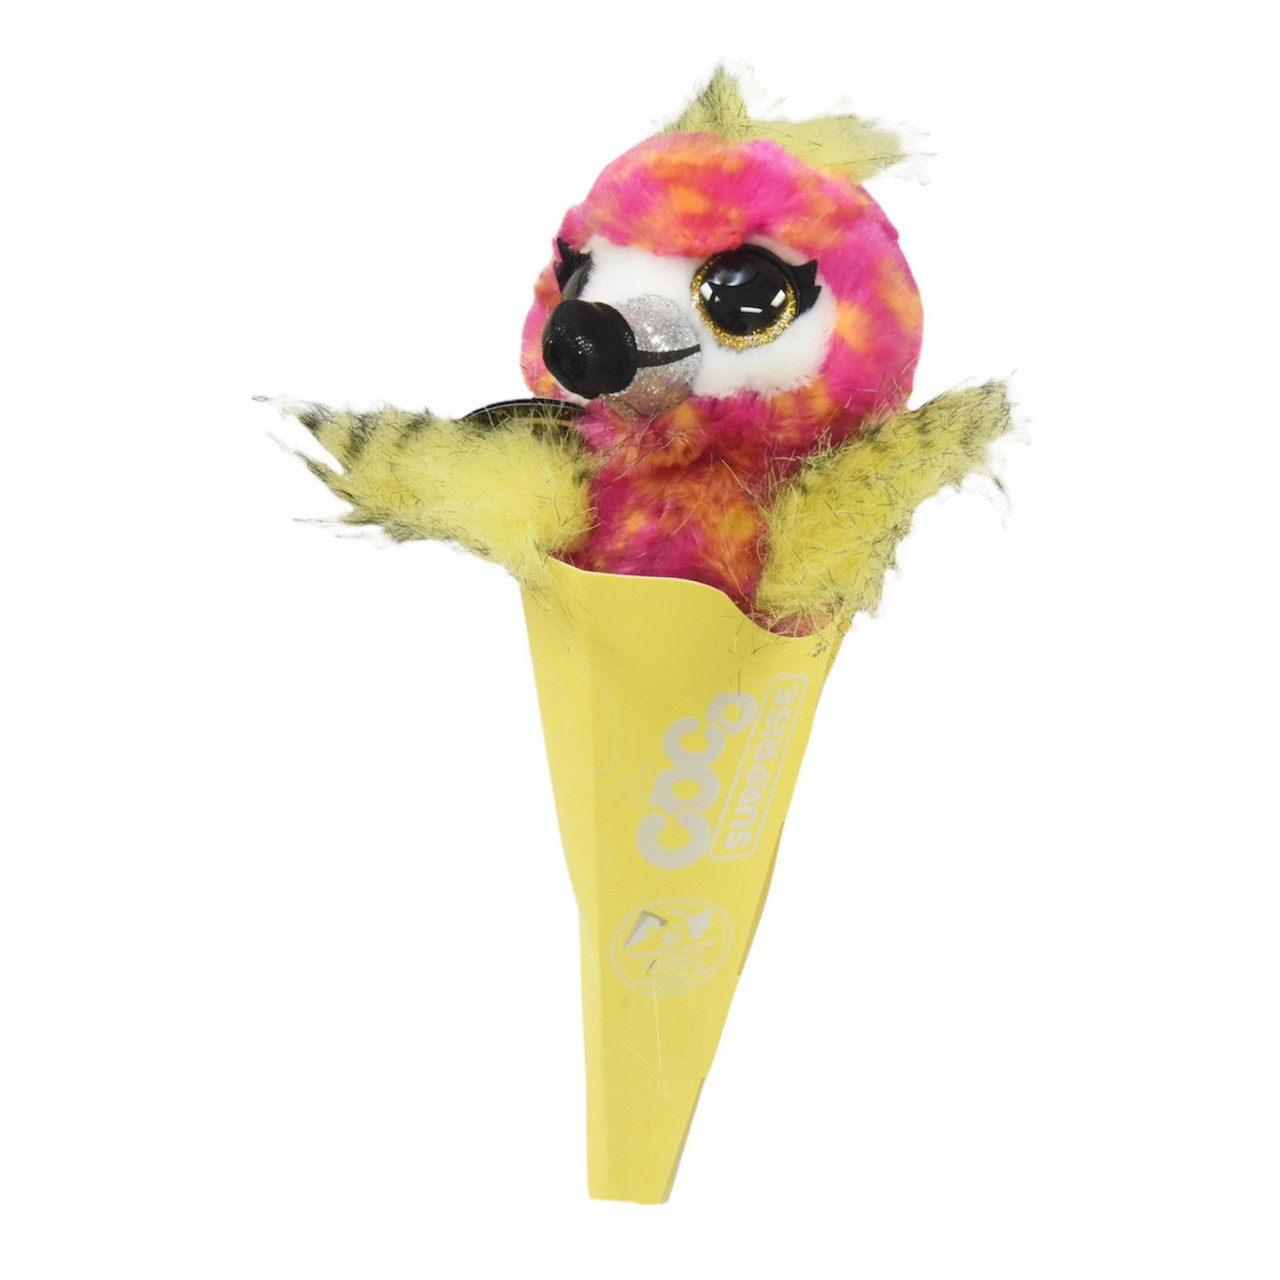 TOYBARN : Zuru Coco Surprise Neon Cones Flamingo Plush Toy with